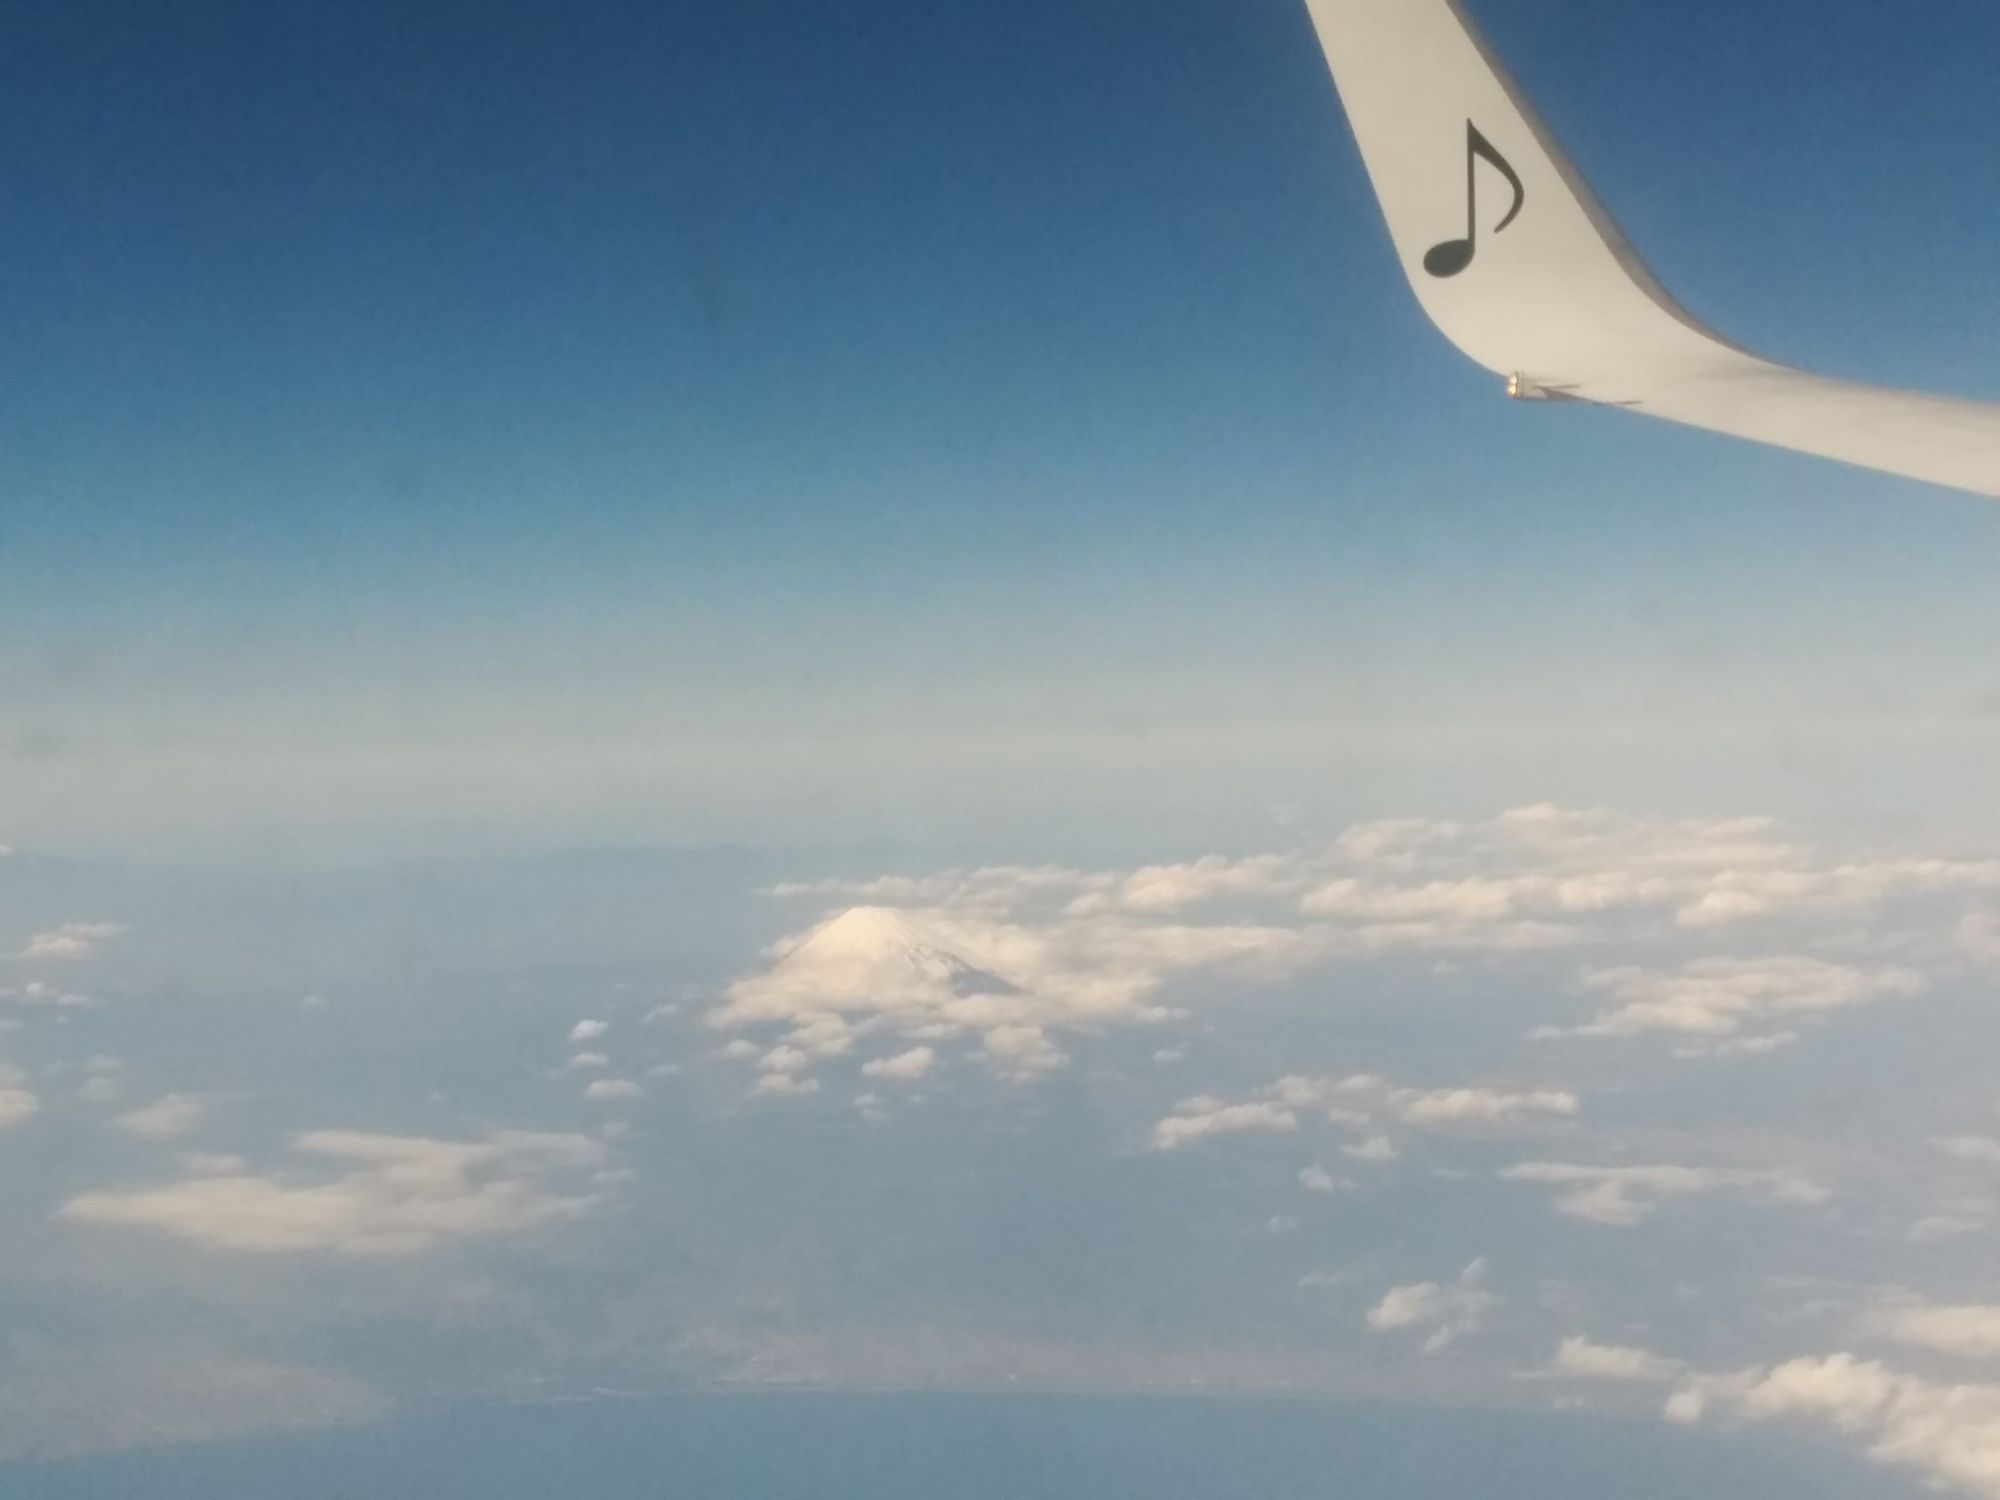 飛行機からの富士山